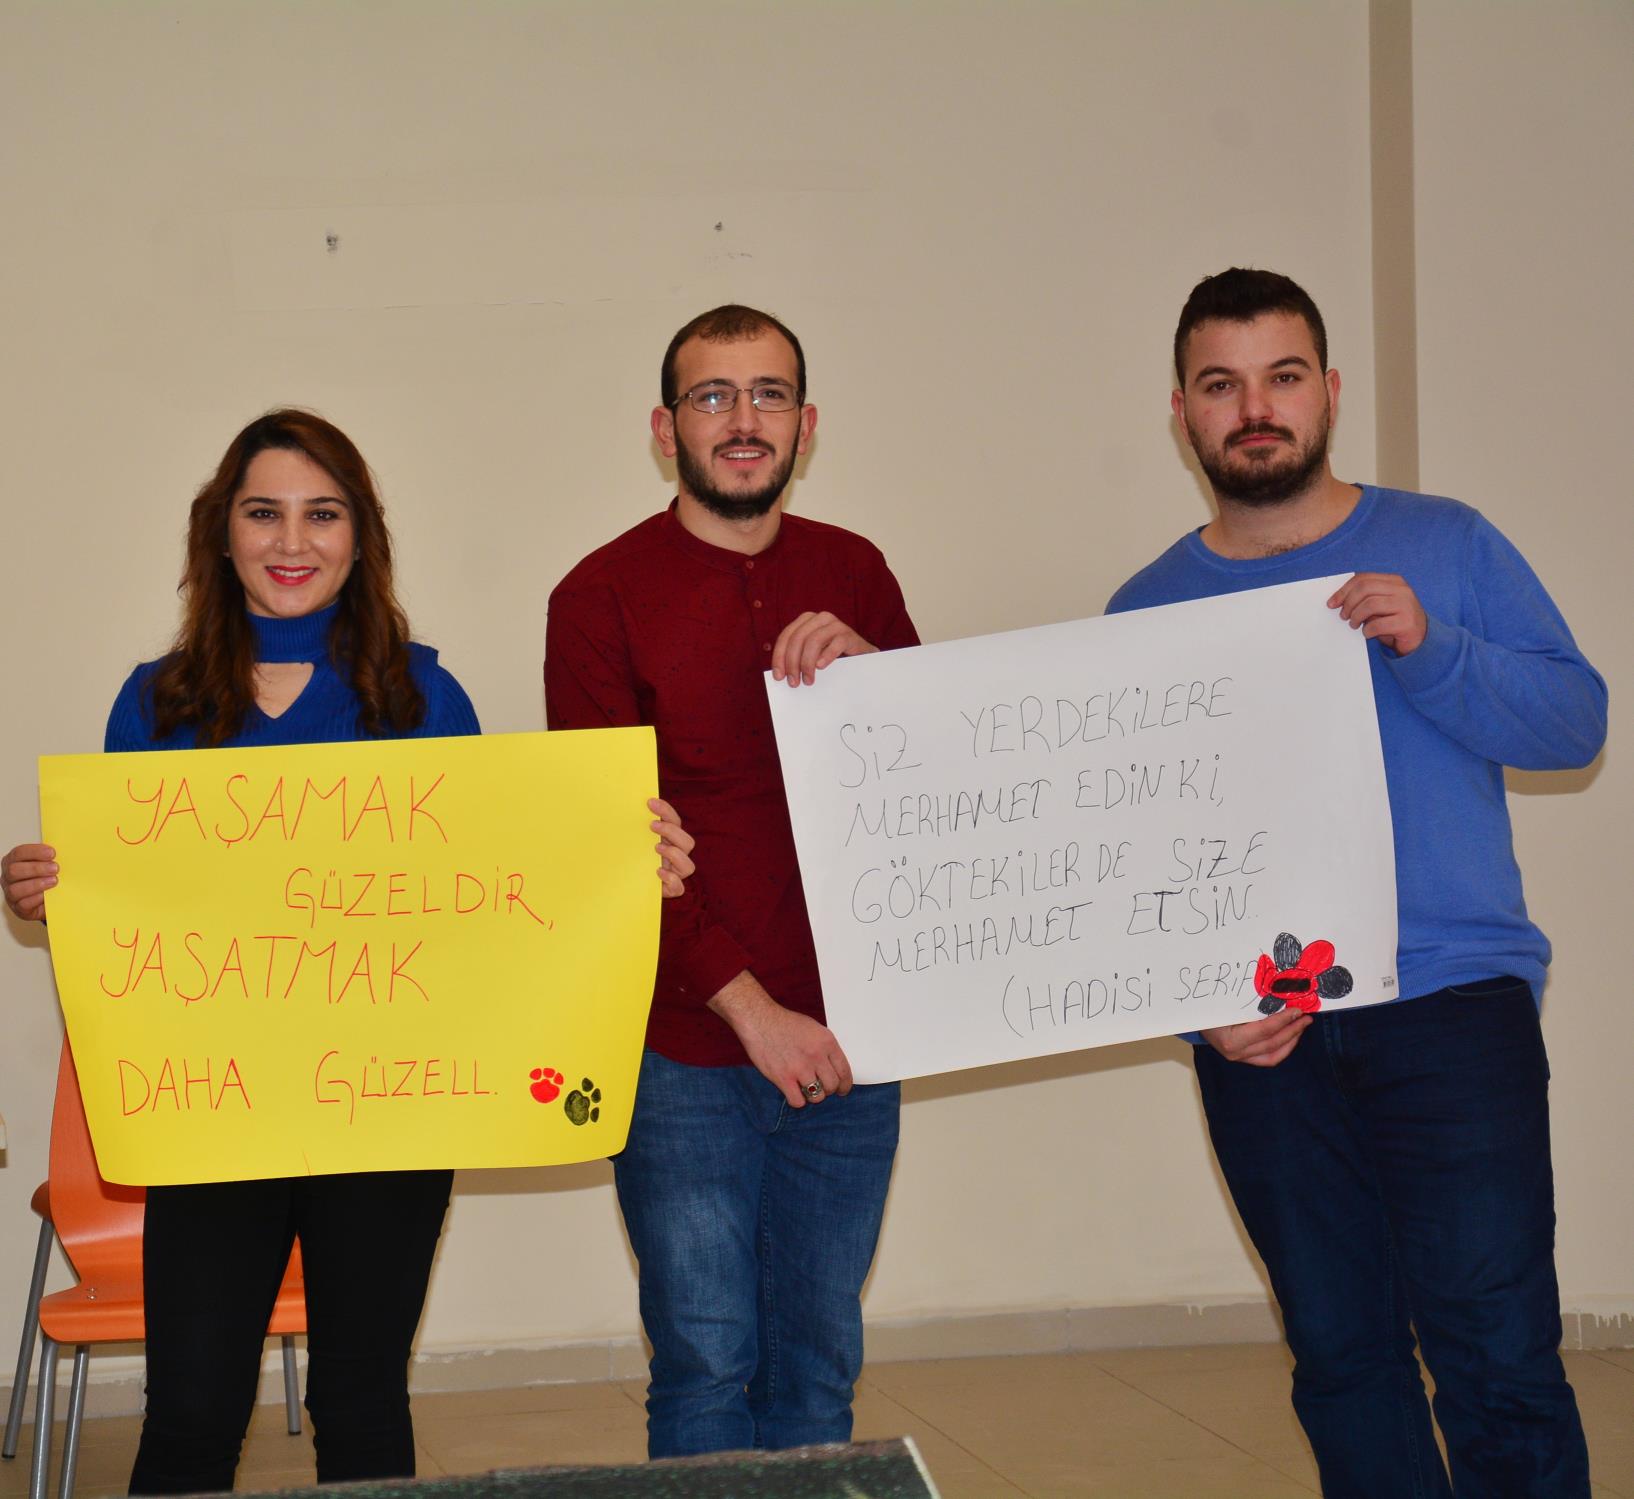 Bitlis Eren Üniversitesi Hayvanları Sevgiyle Koruma, Toplum Gönüllüleri Öğrenci Toplulukları ile Gençlik Merkezi öğrencileri tarafından sokak hayvanları için ahşap kulübe yapılarak Rahva Yerleşkesi’ndeki kampüs alanına bırakıldı.
